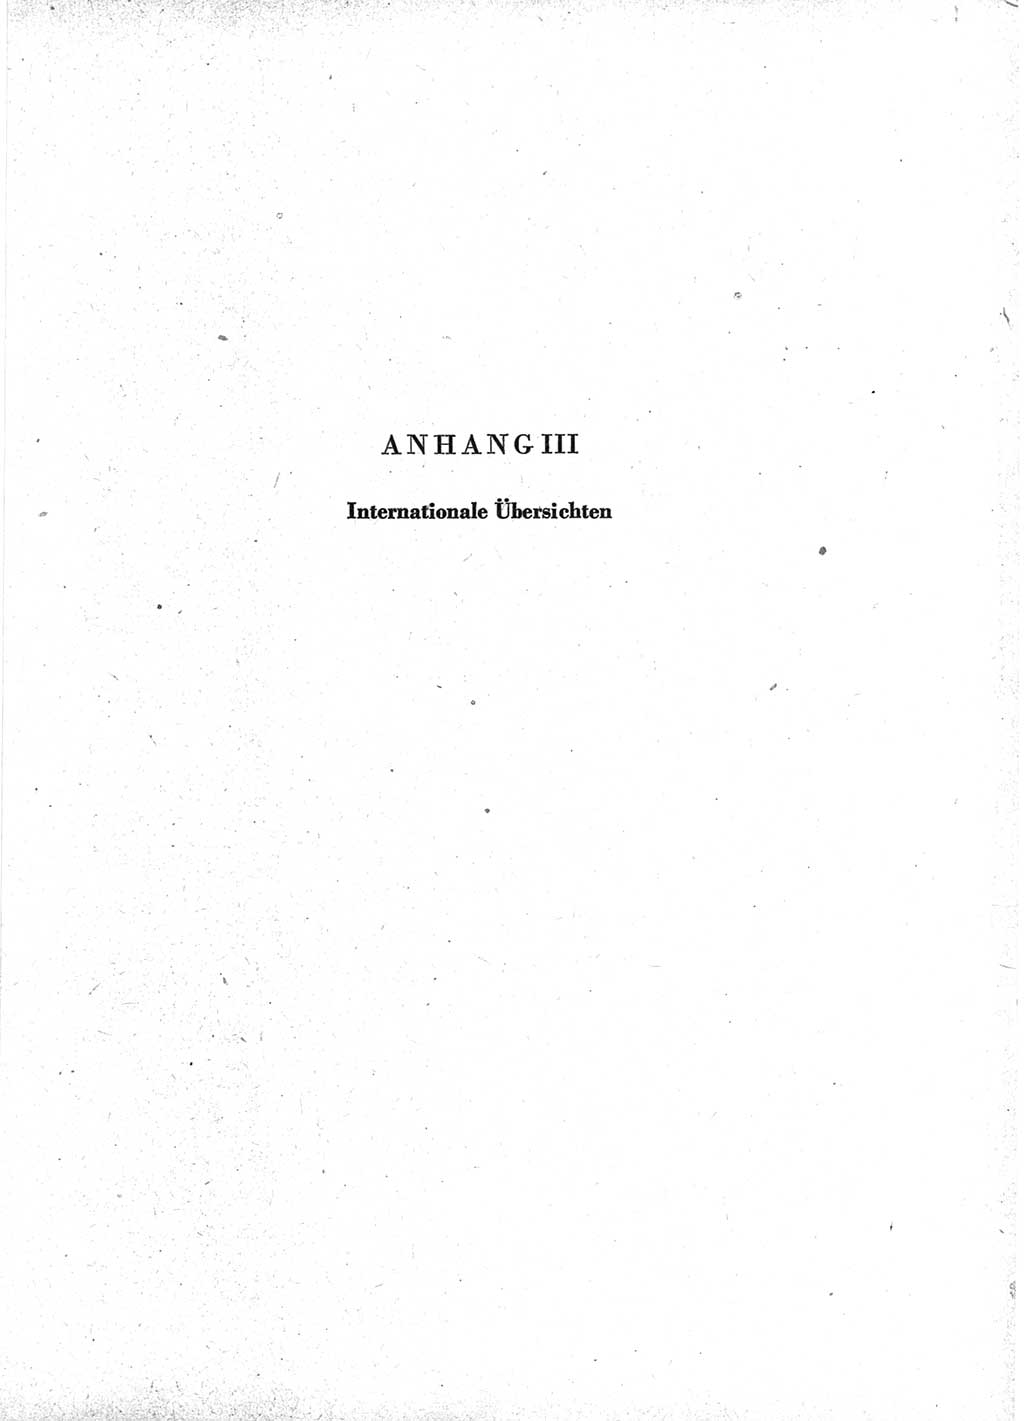 Statistisches Jahrbuch der Deutschen Demokratischen Republik (DDR) 1960-1961, Seite 1 (Stat. Jb. DDR 1960-1961, S. 1)